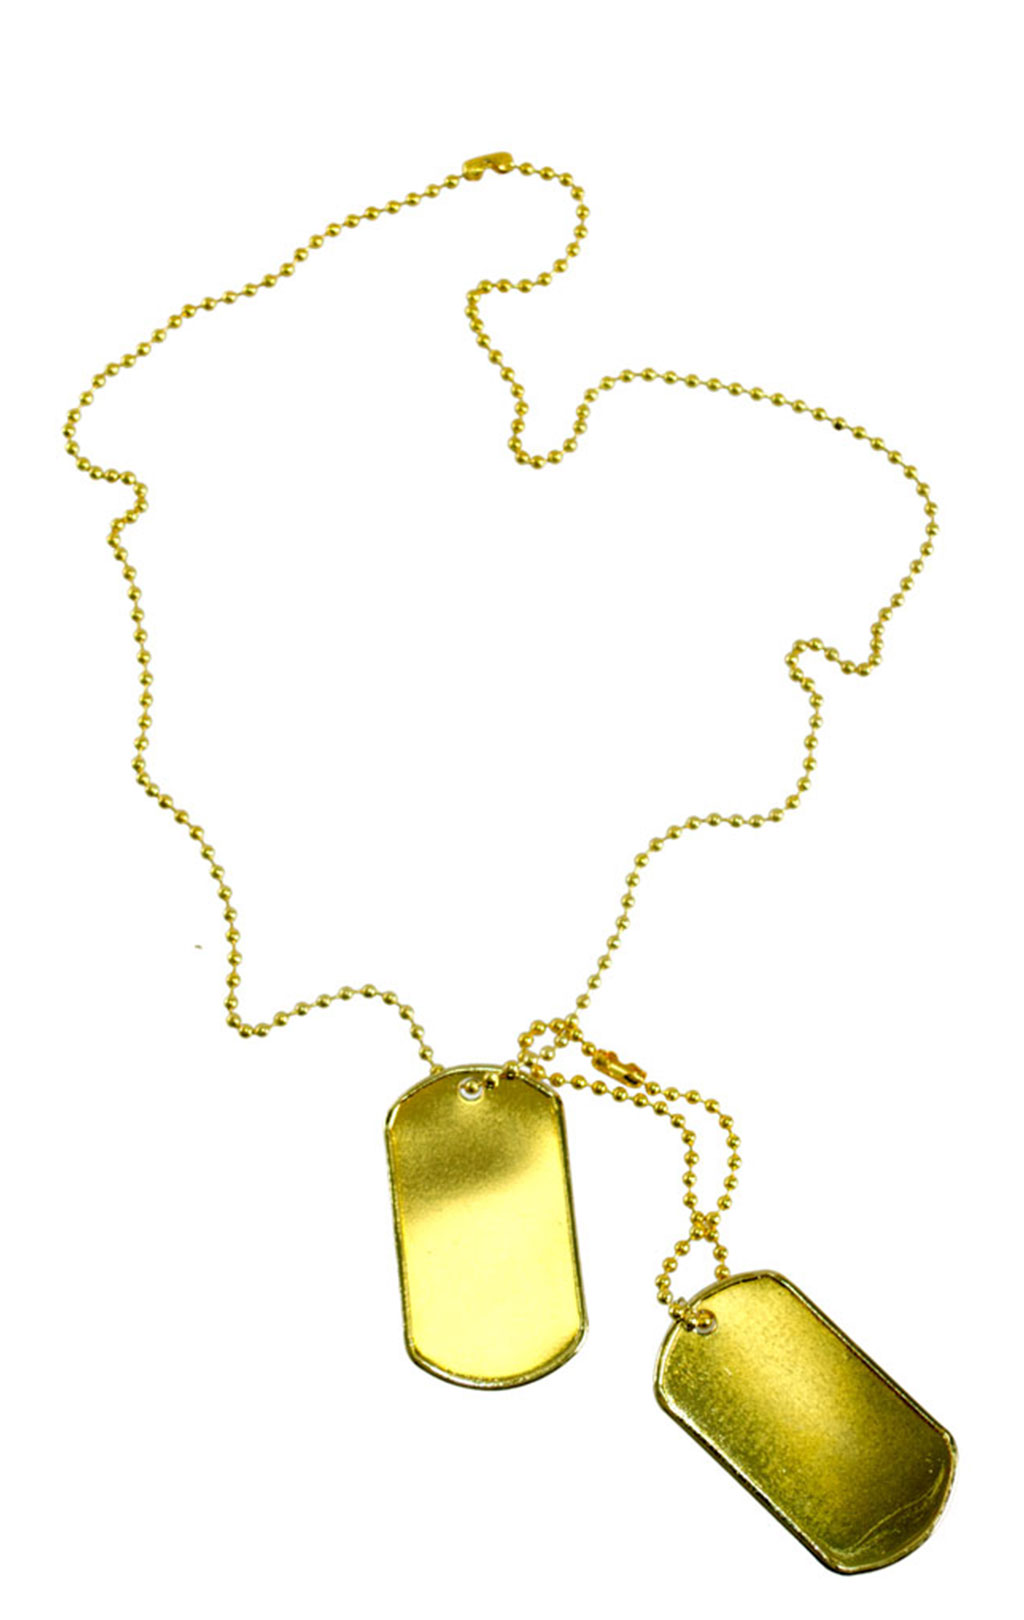 Комплект жетонов Dog tag с цепочками gold США